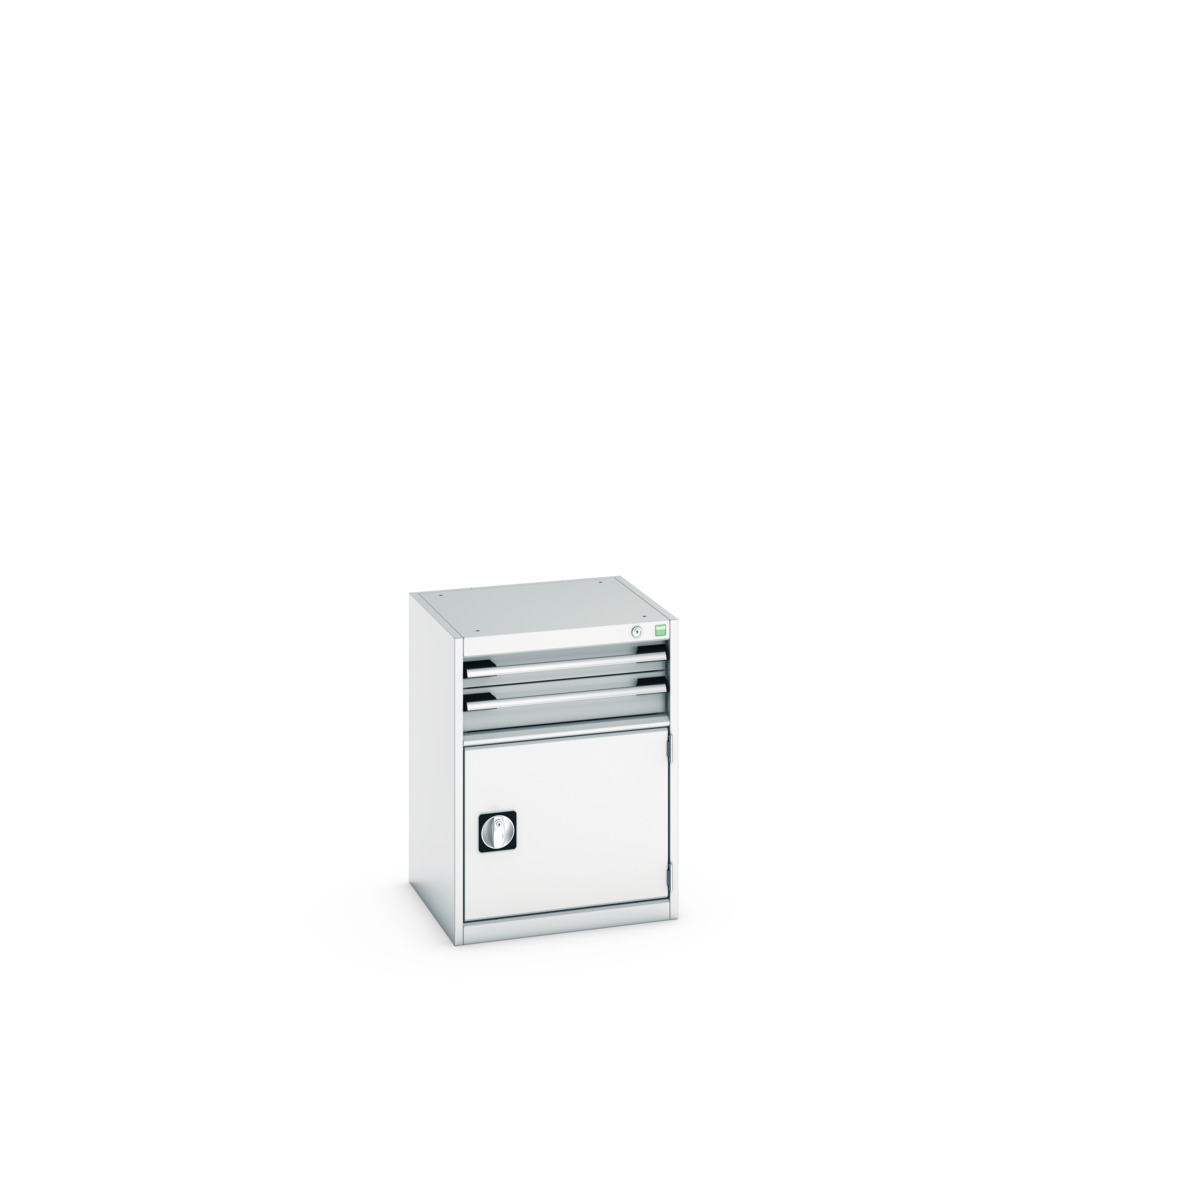 40010017.16V - cubio drawer-door cabinet